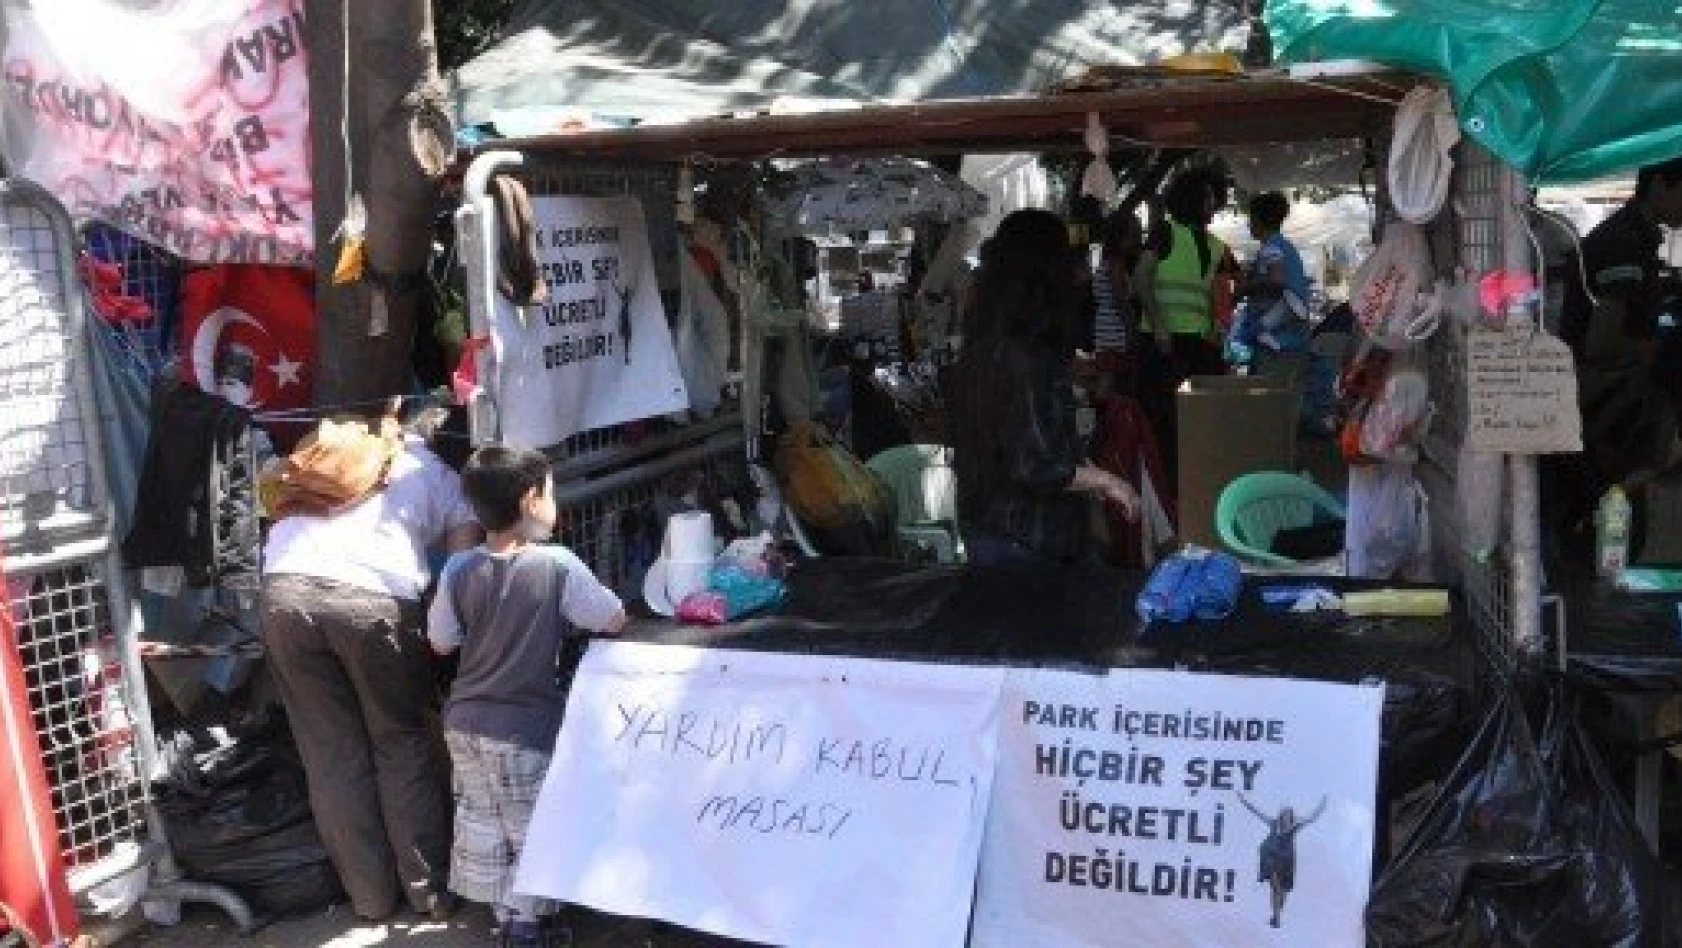 Gezi Parkı'ndaki eylemler 13. gününde